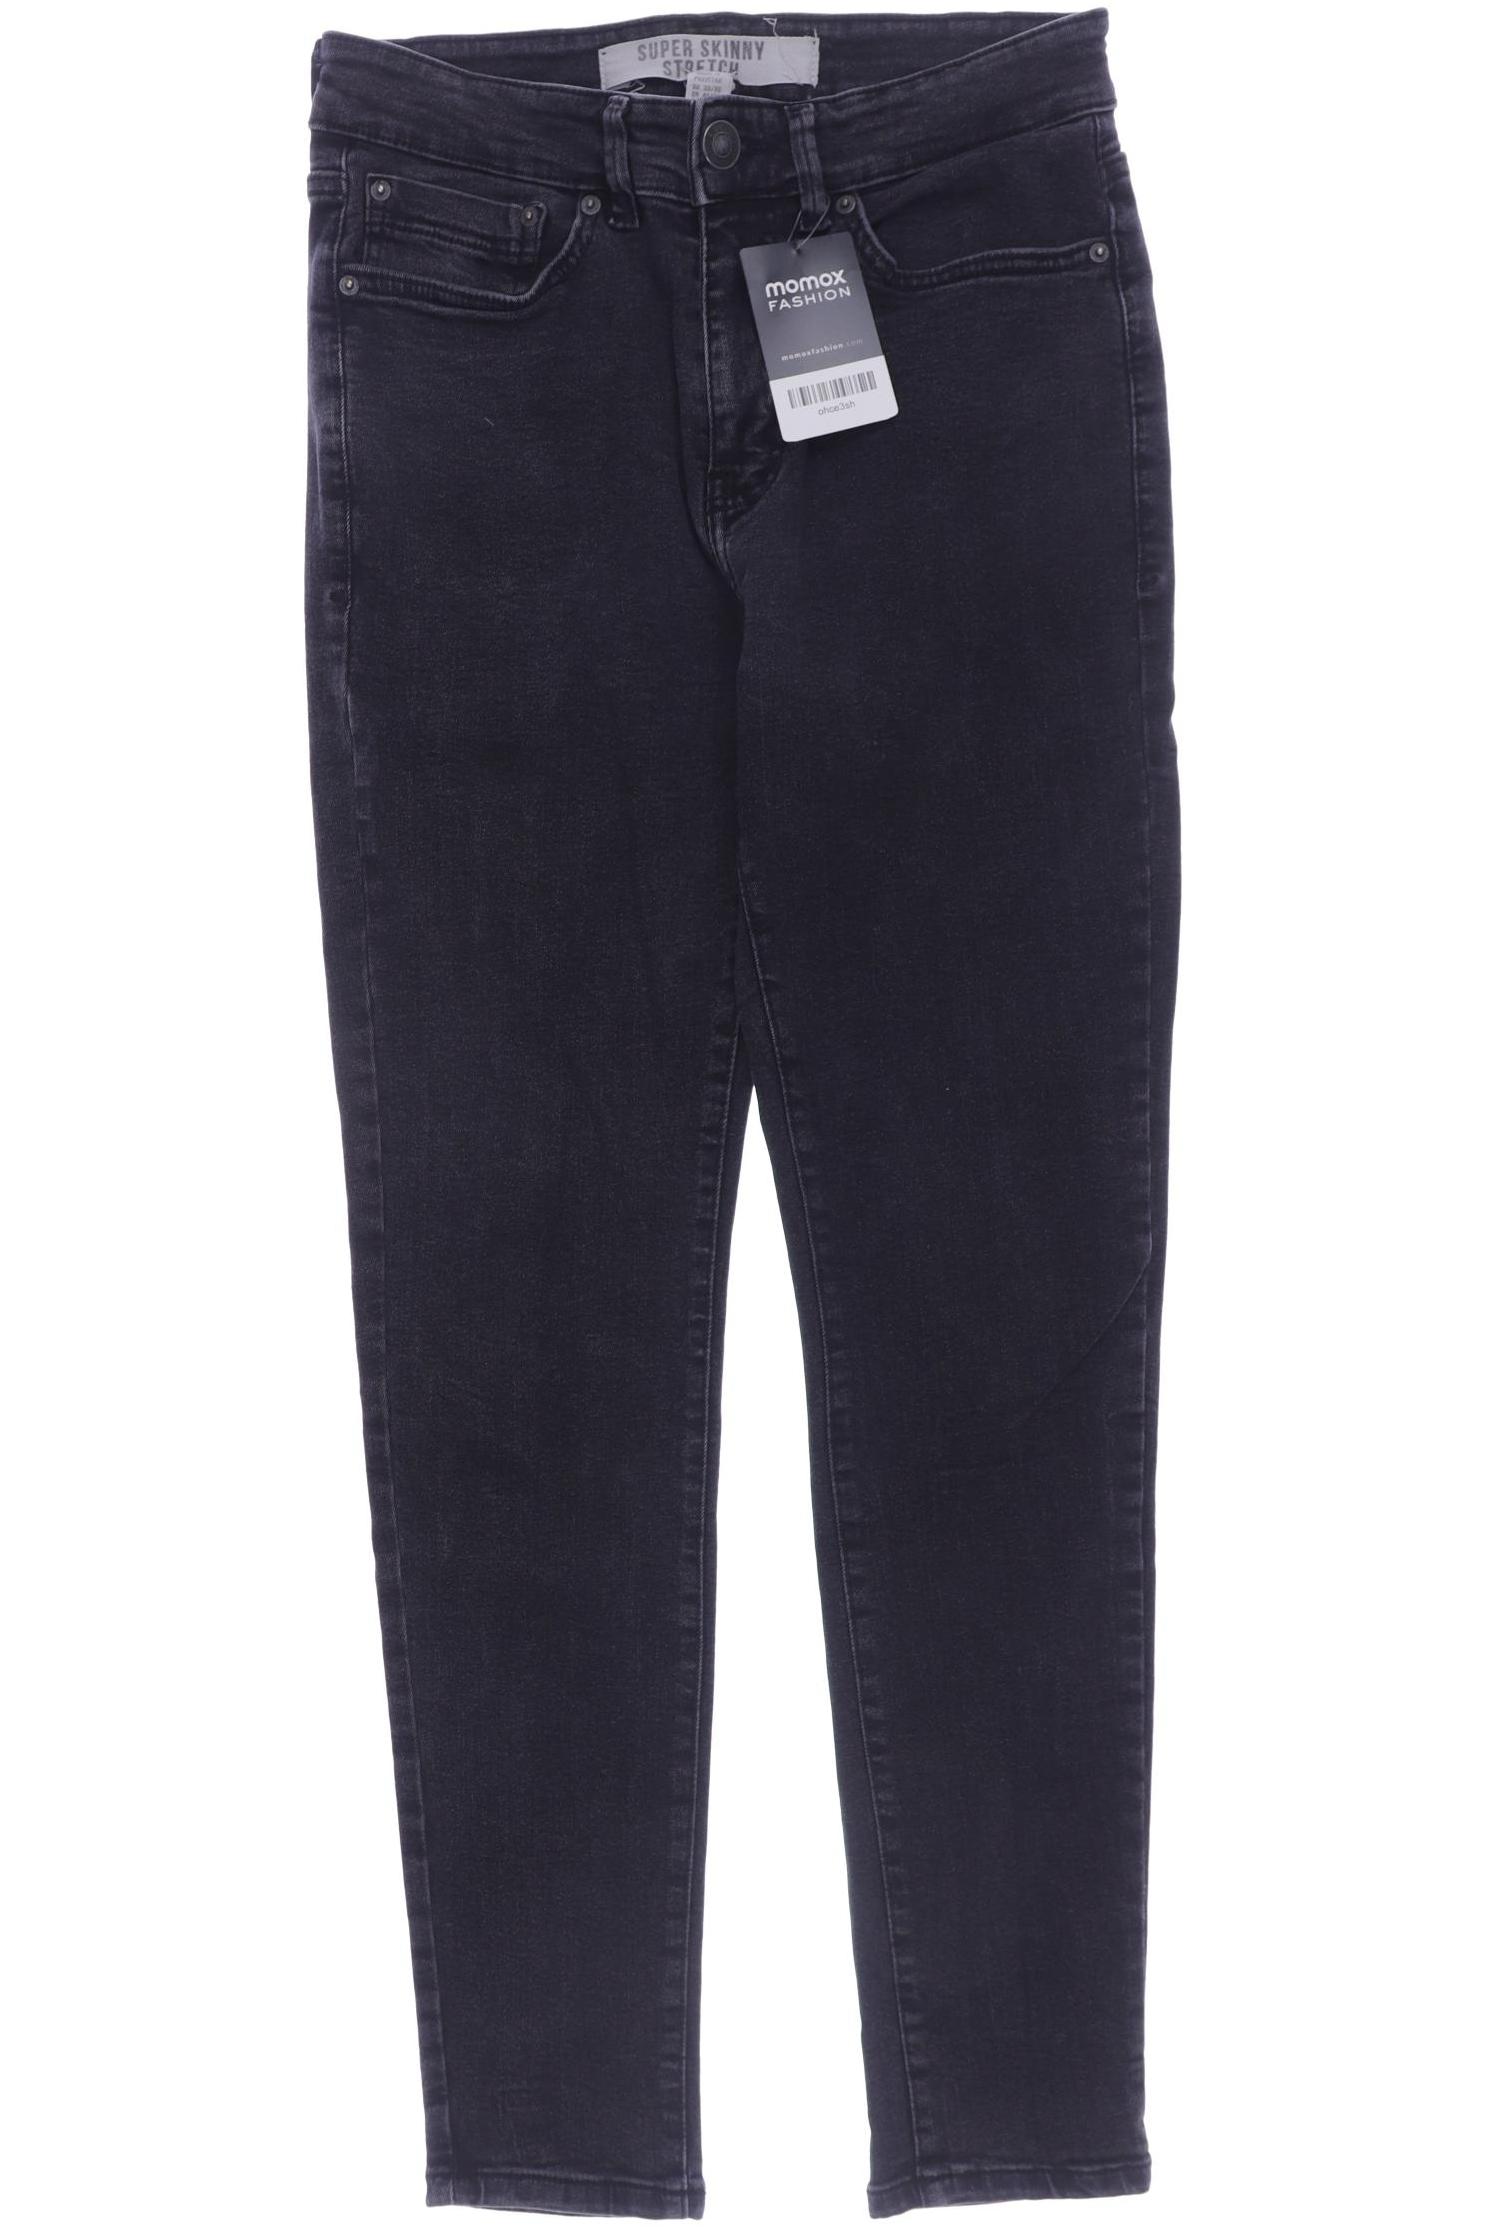 New Look Herren Jeans, schwarz, Gr. 42 von New Look